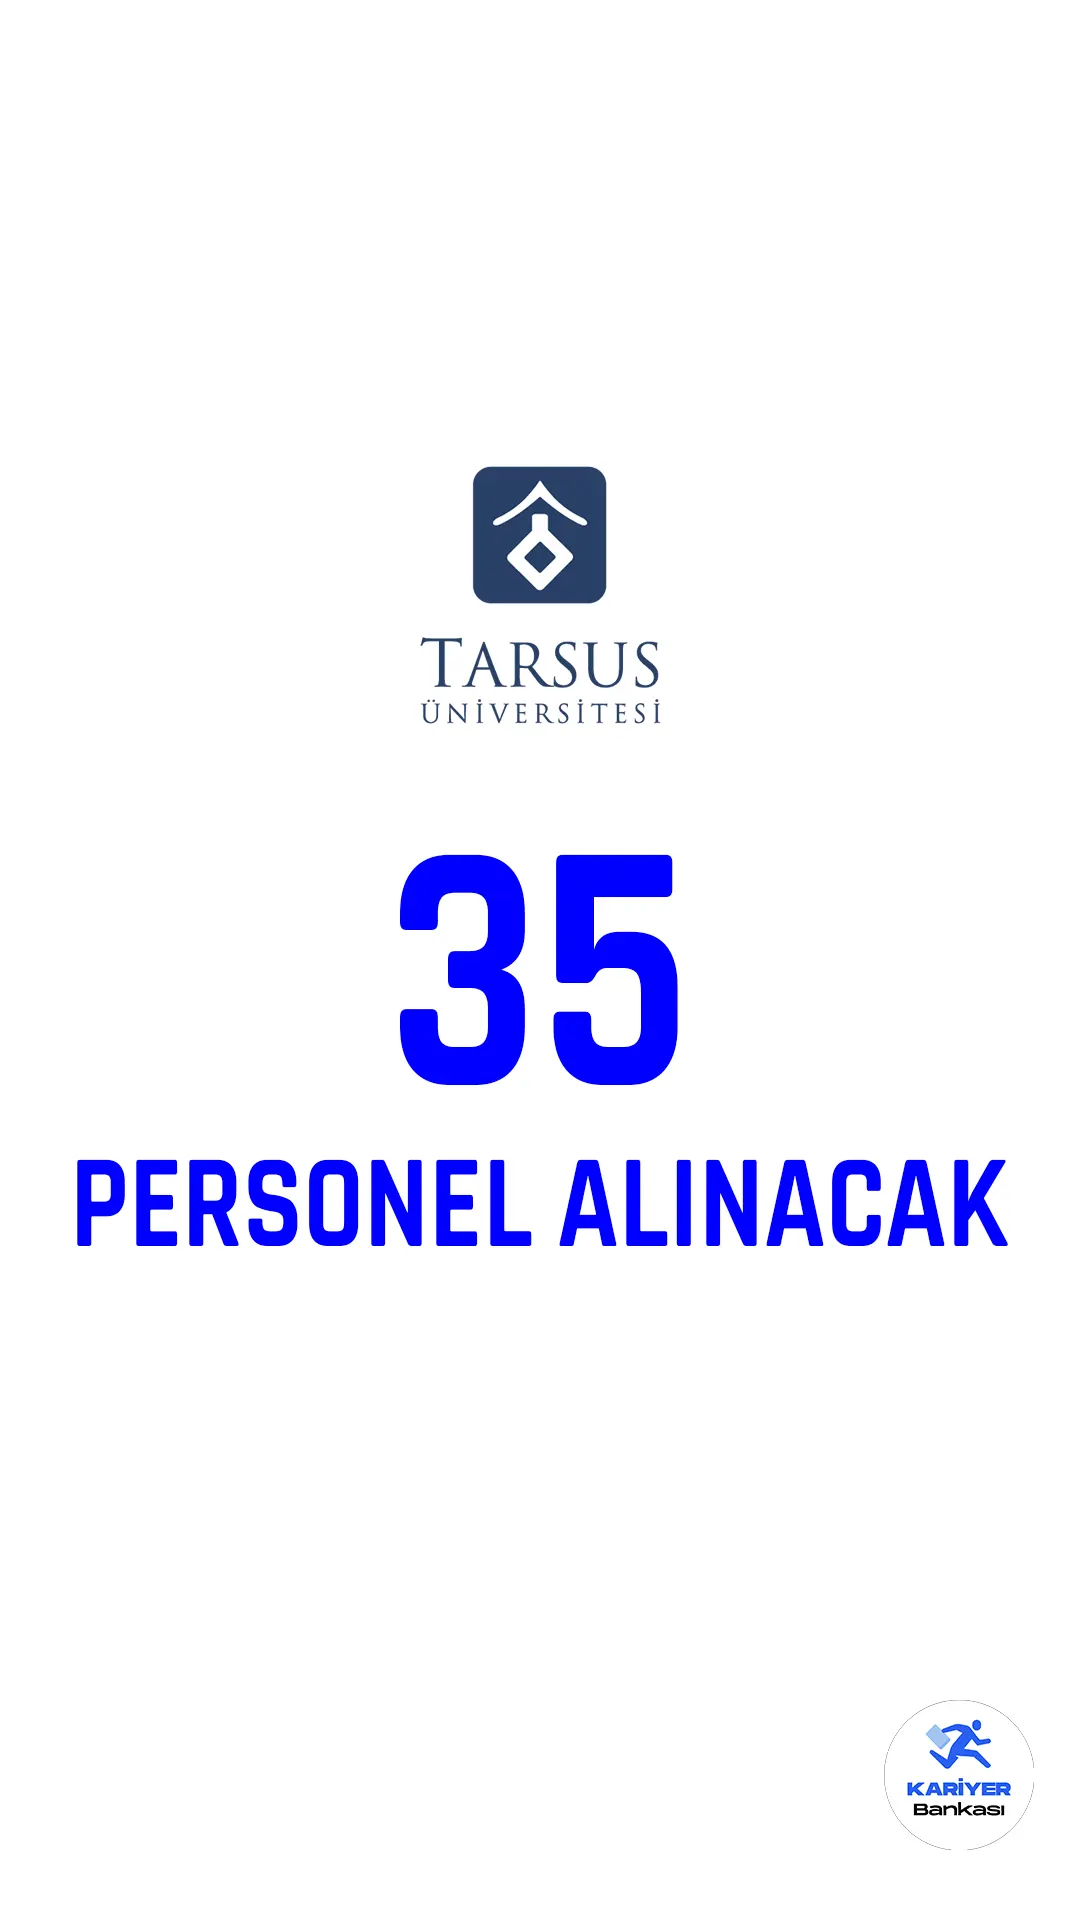 Tarsus Üniversitesi personel alımı duyurusu Cumhurbaşkanlığı SBB Kamu ilan sitesinde yayımlandı.